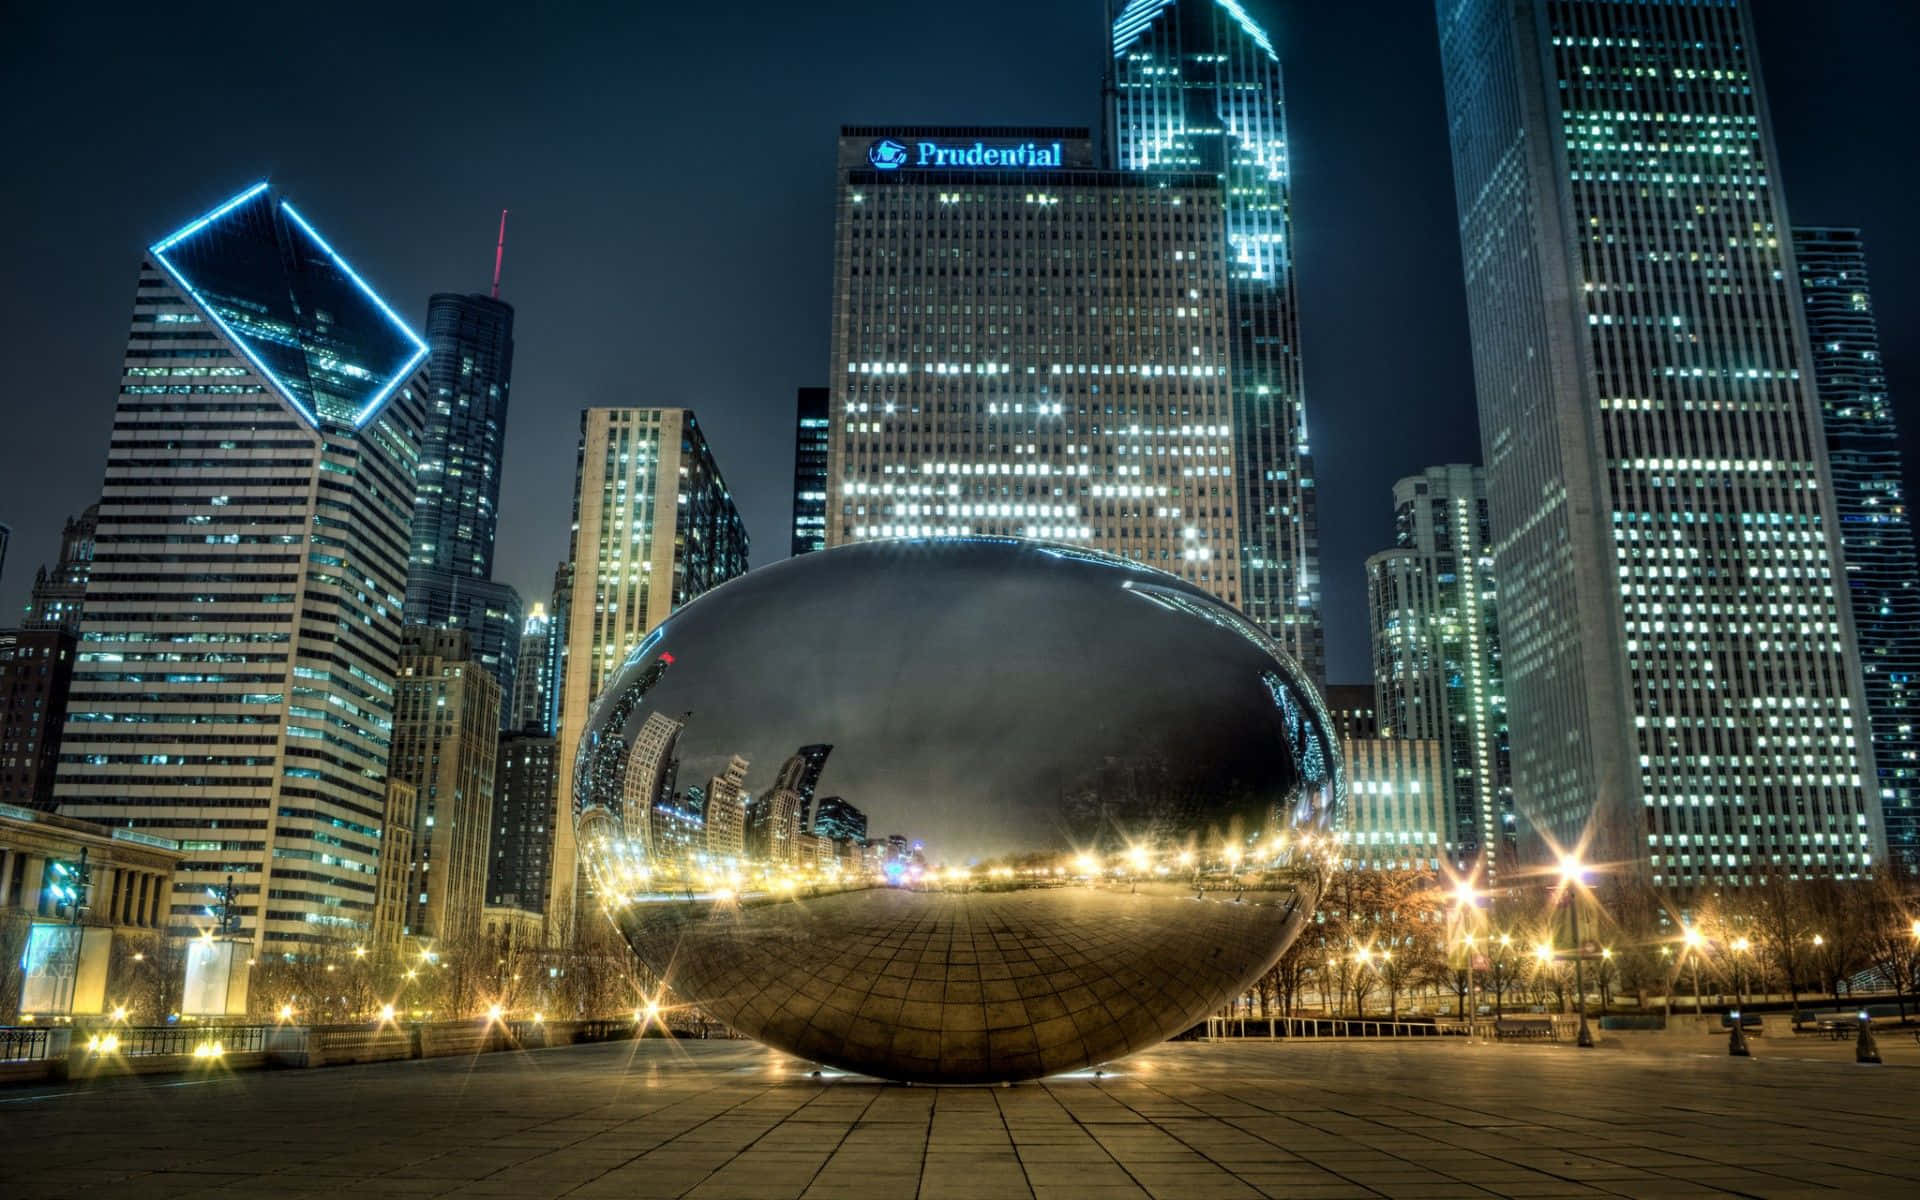 Chicagobilder